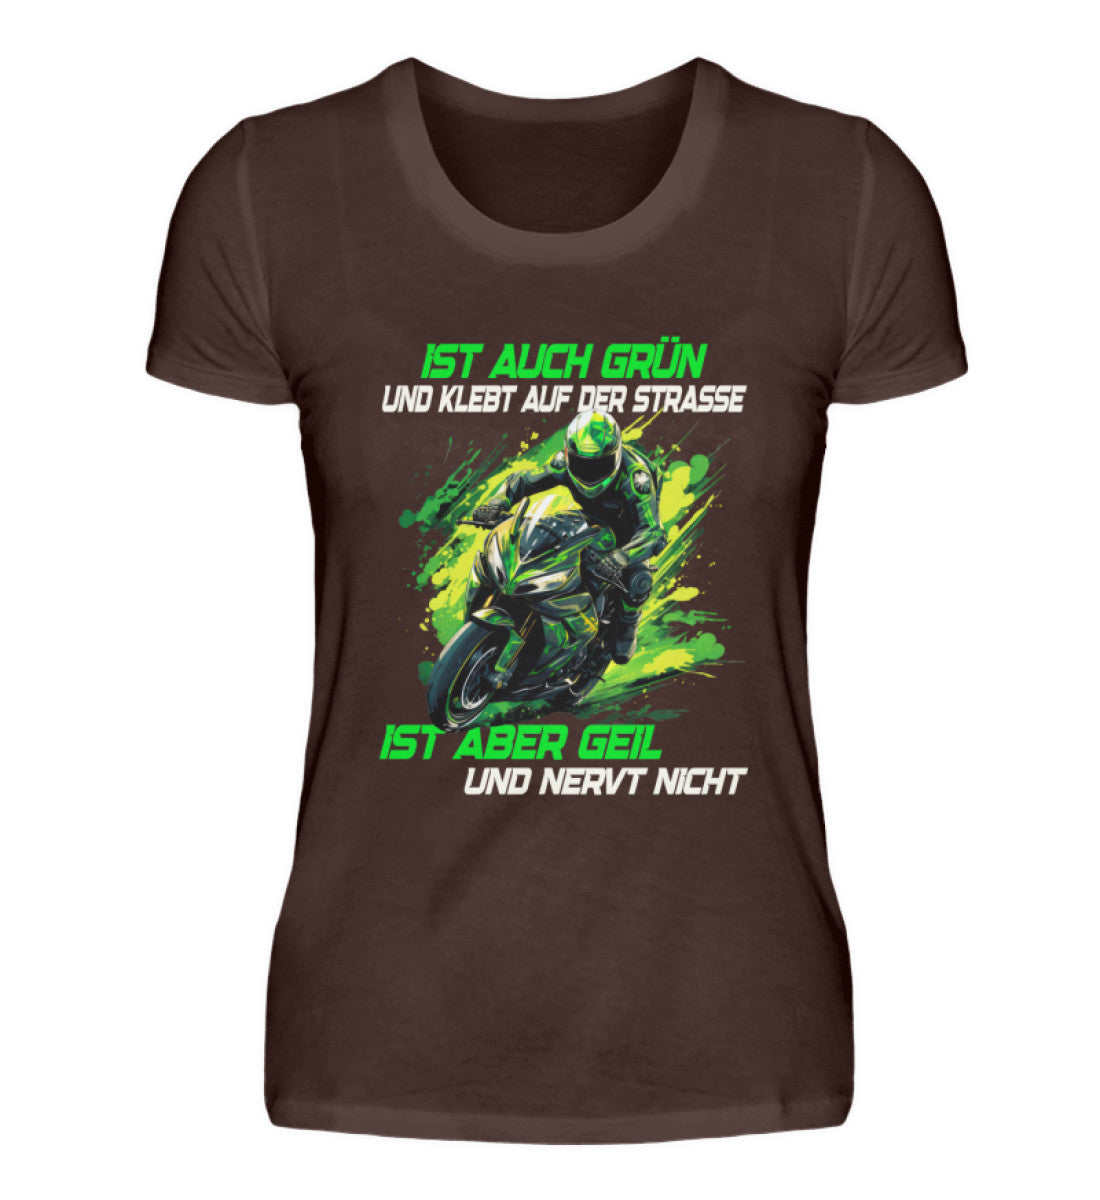 Ein T-Shirt für Motorradfahrerinnen von Wingbikers mit dem Aufdruck, Supersportler - Ist auch grün und klebt auf der Straße, ist aber geil und nervt nicht, in braun.